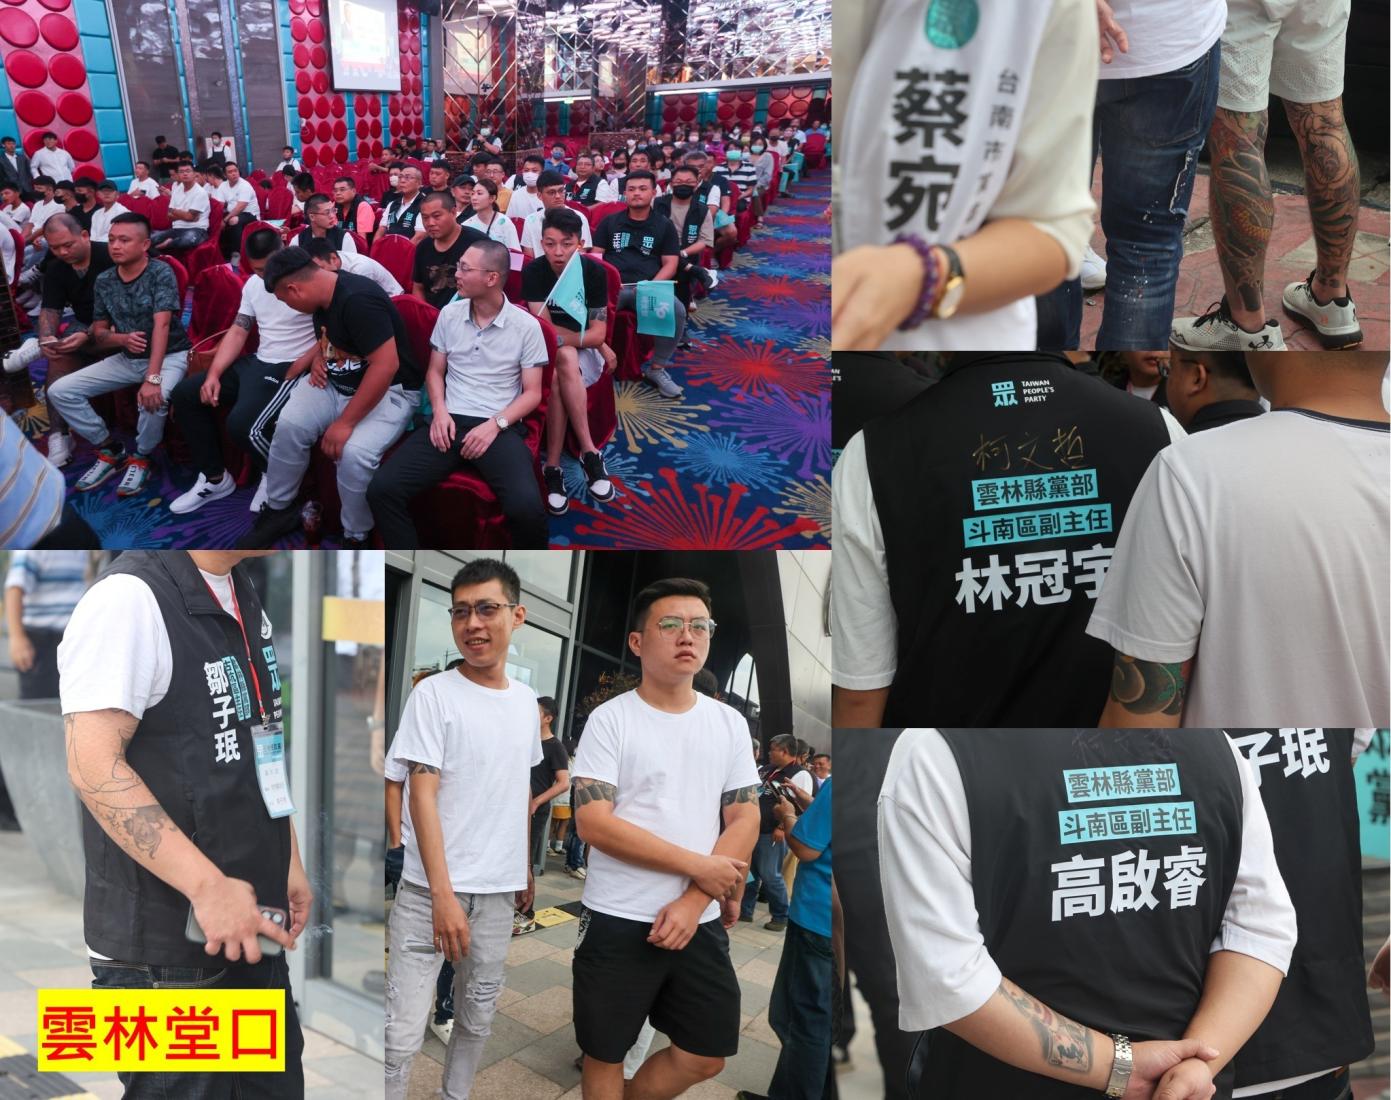 網紅「四叉貓」劉宇在臉書貼出民眾黨造勢活動有許多身上有刺青的人參加。翻攝四叉貓臉書